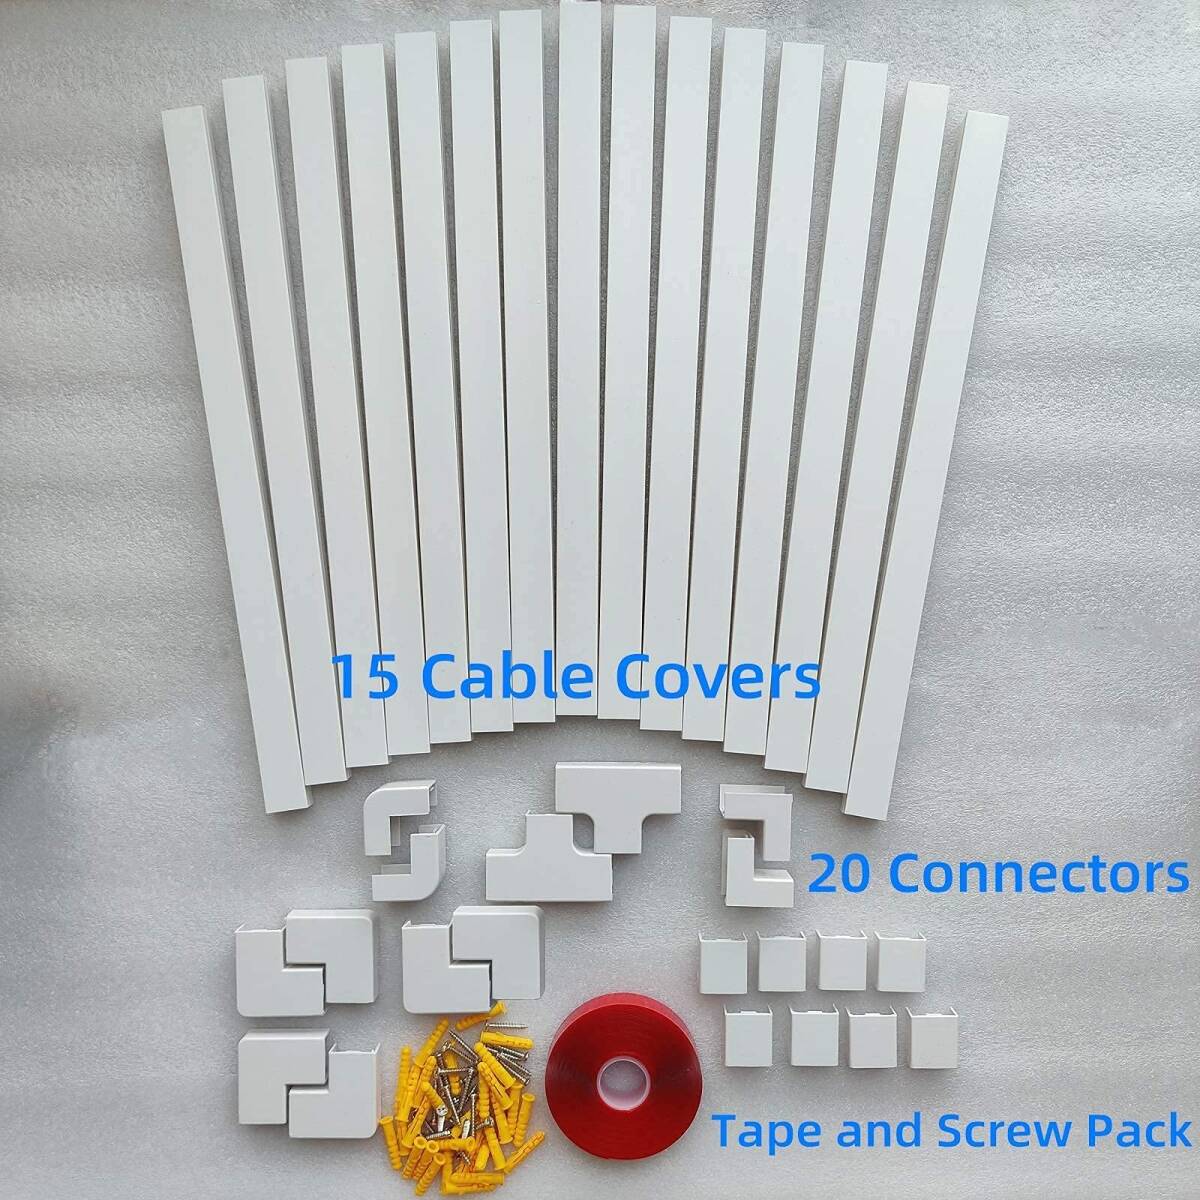 　ホワイト電線ケーブルカバーセット 見せる収納 配線隠しに最適